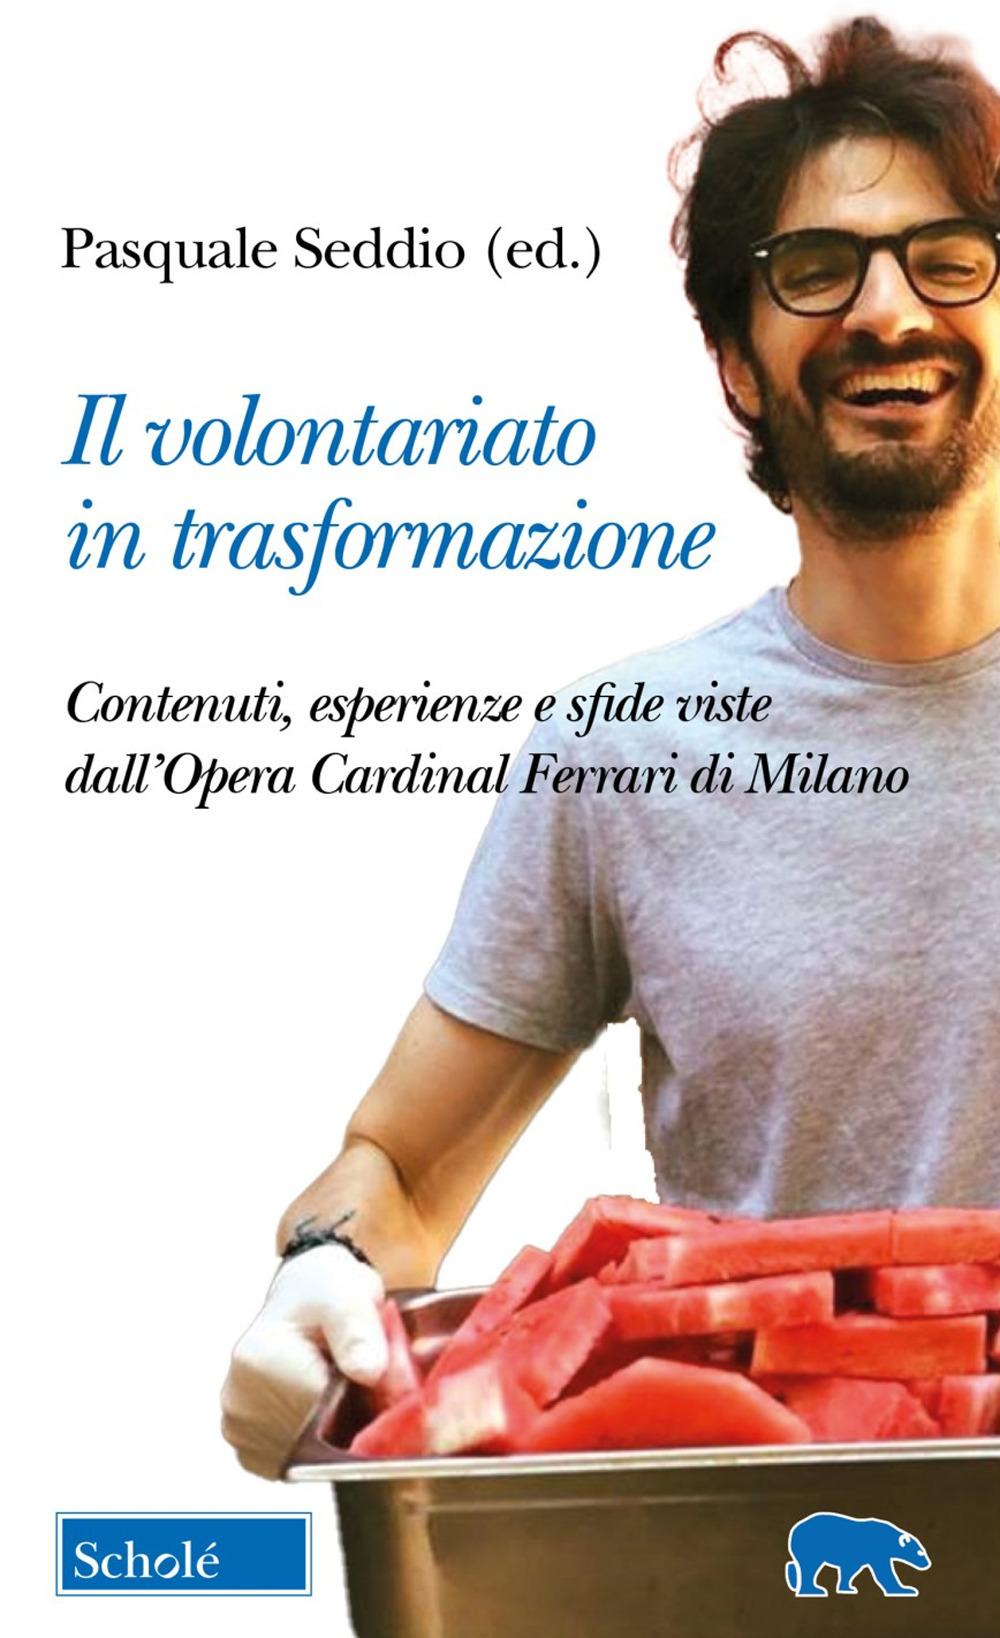 Il volontariato in trasformazione. Contenuti, esperienze e sfide viste dall'Opera Cardinal Ferrari di Milano